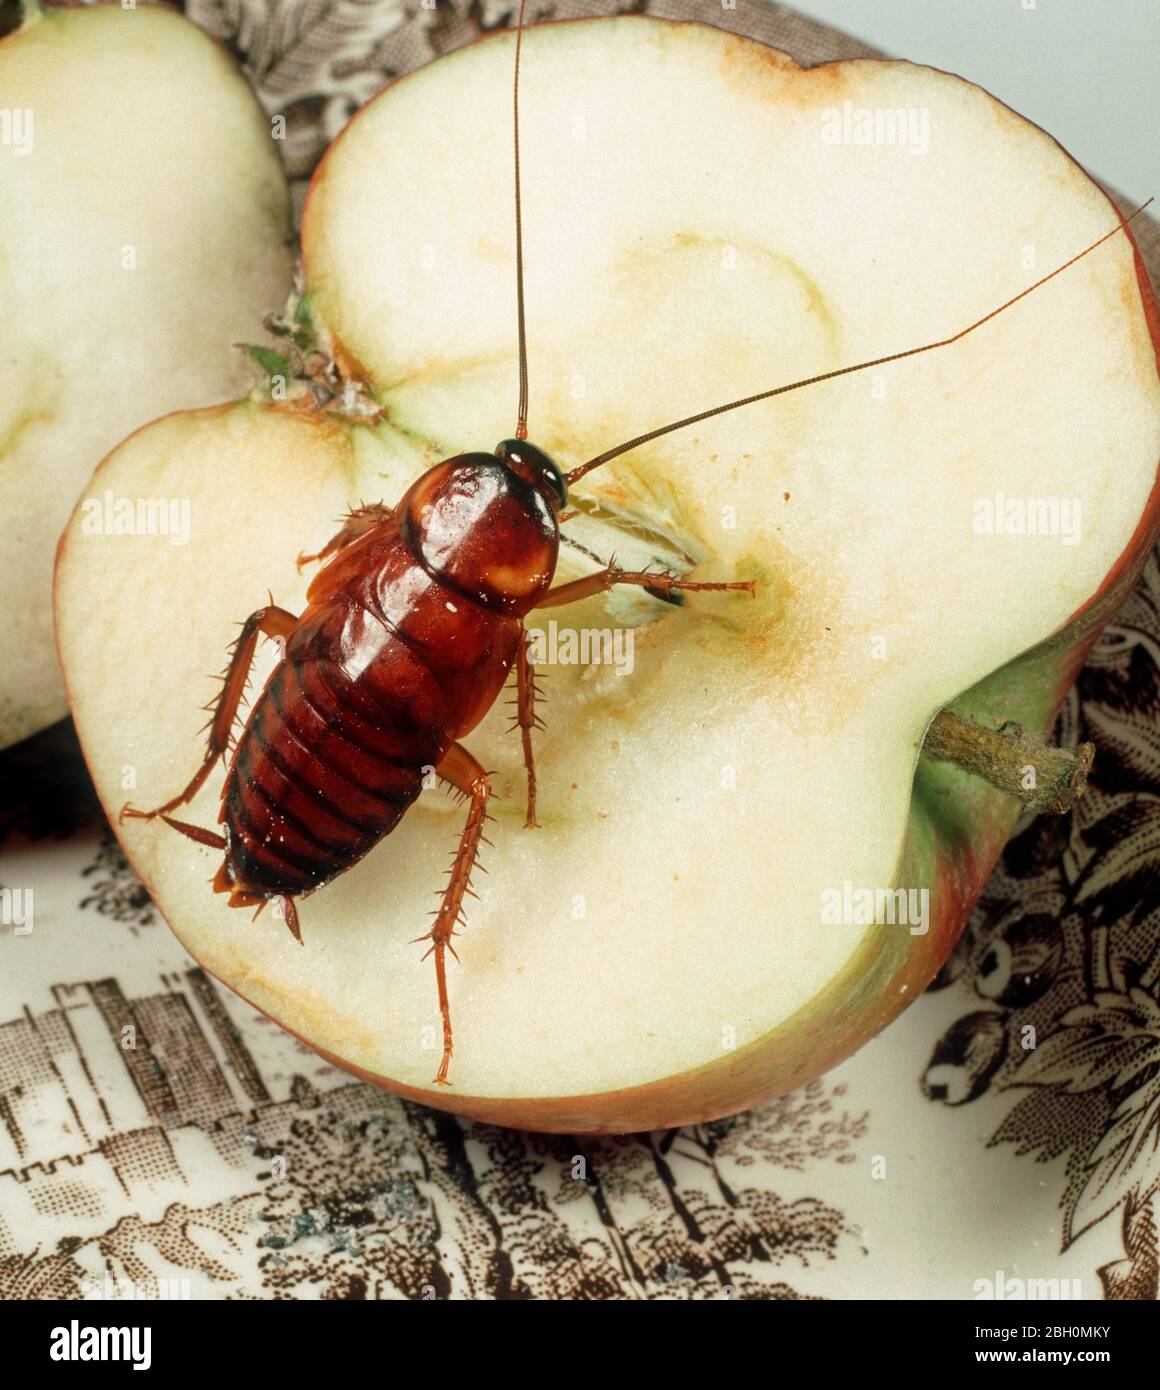 American Cockroach (Periplanata americana) ninfa de peste doméstica en una manzana Foto de stock